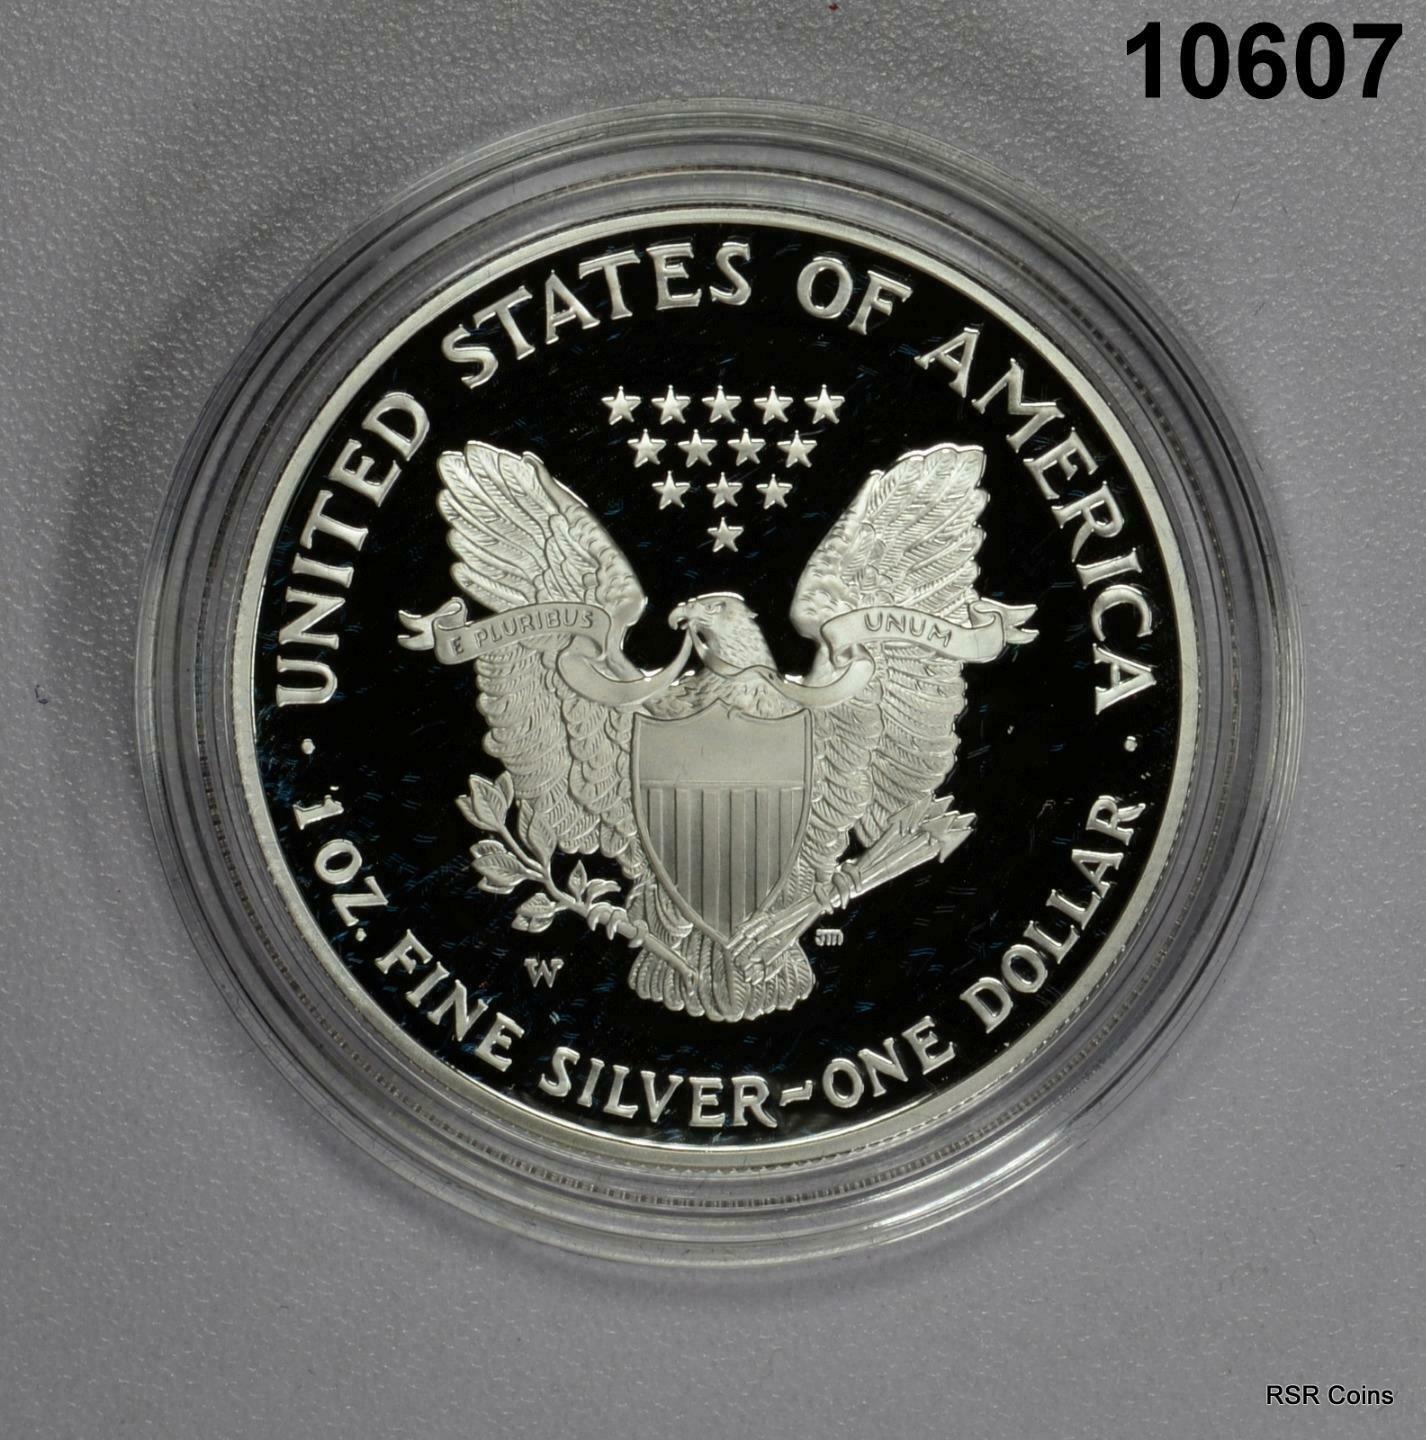 2006 W AMERICAN EAGLE 1OZ SILVER PROOF WITH BOX & COA #10607